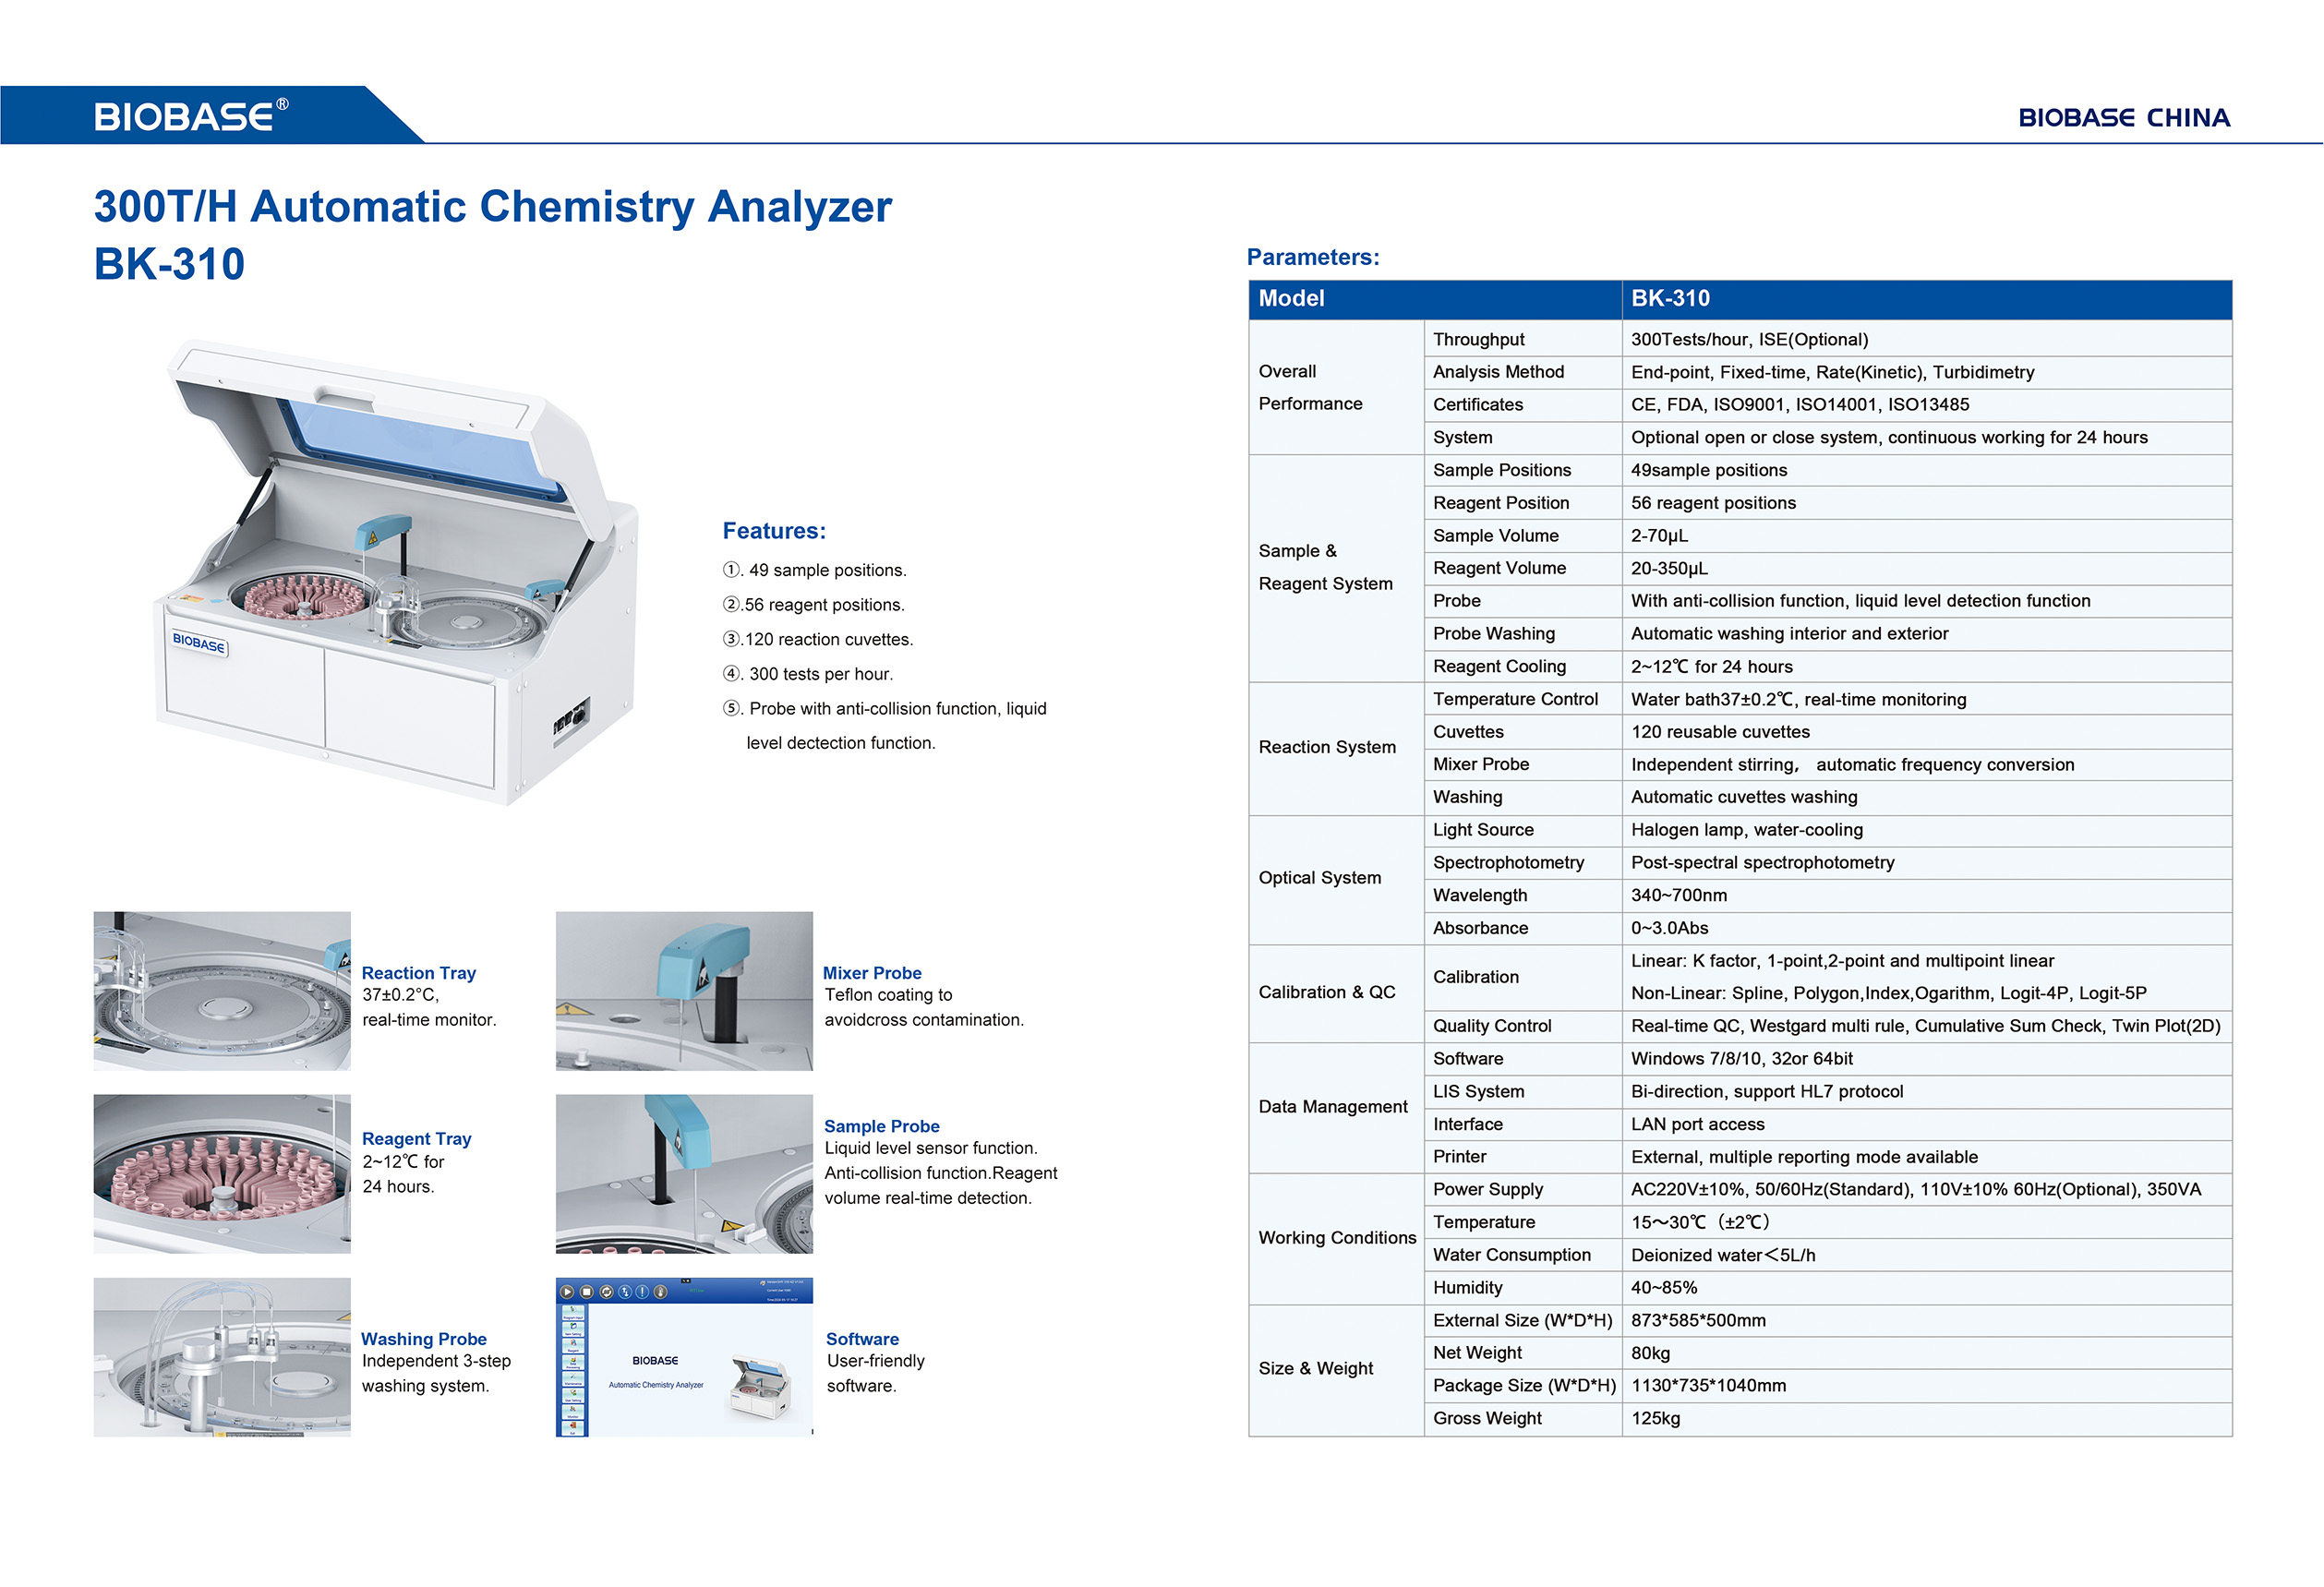 BK-310 Automatic Chemistry Analyzer